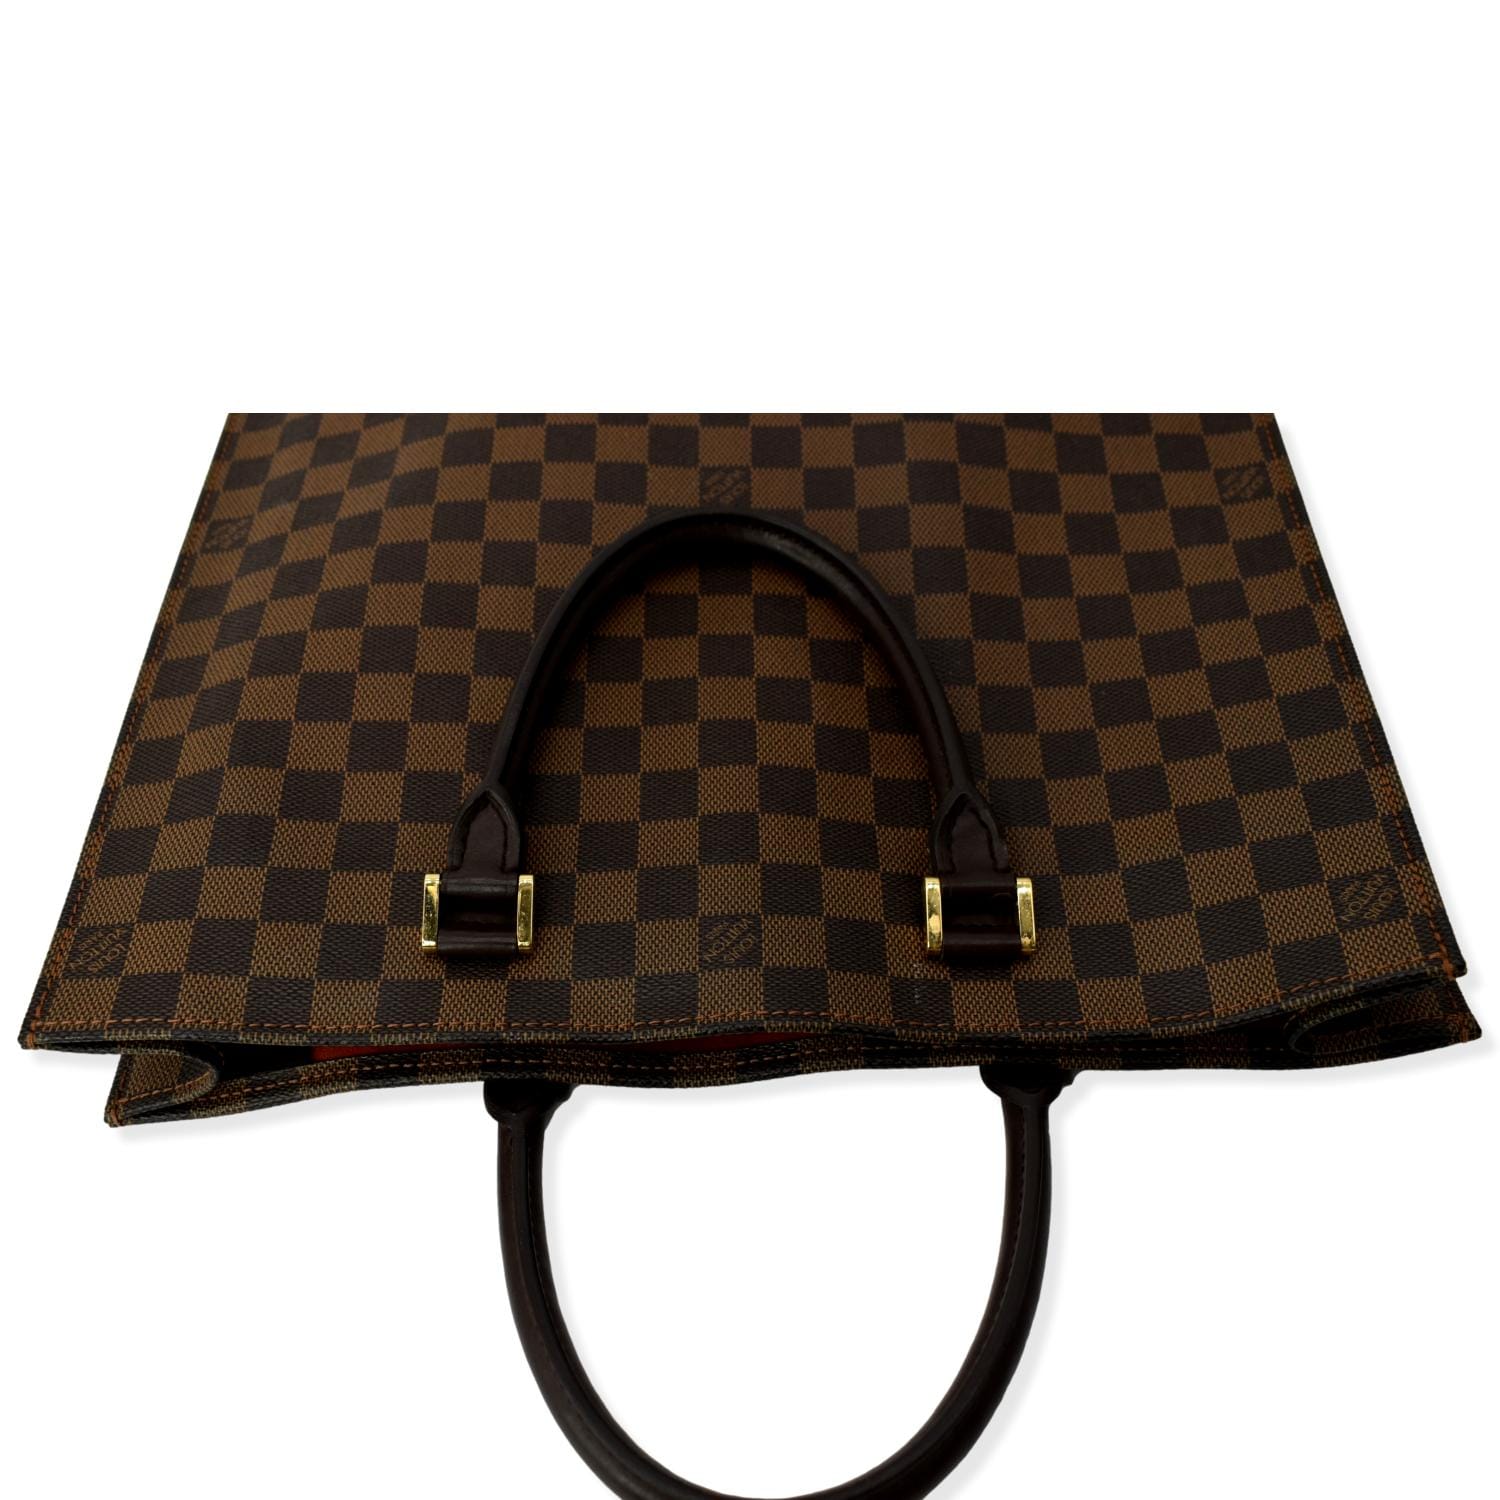 Louis Vuitton, Bags, Louis Vuitton Sac Plat Tote Vi13